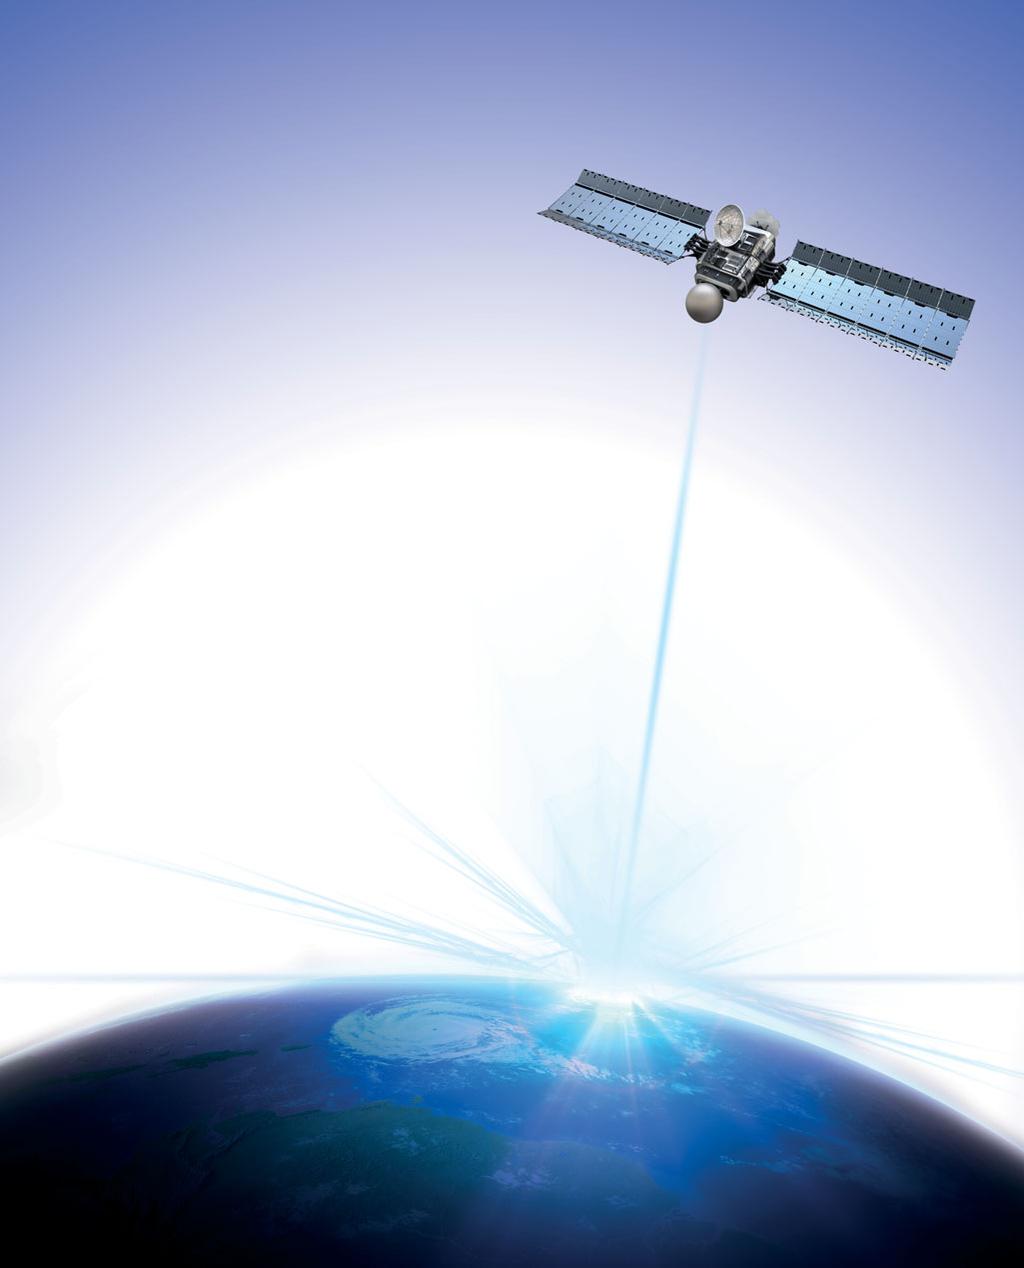 TELEMATIKKSYSTEM DEN VITENSKAPLIGE DELEN Case SiteWatch telematikksystem bruker en høyteknologisk styreenhet montert på hver maskin for å samle informasjon fra maskinen og fra GPS-satellitter.